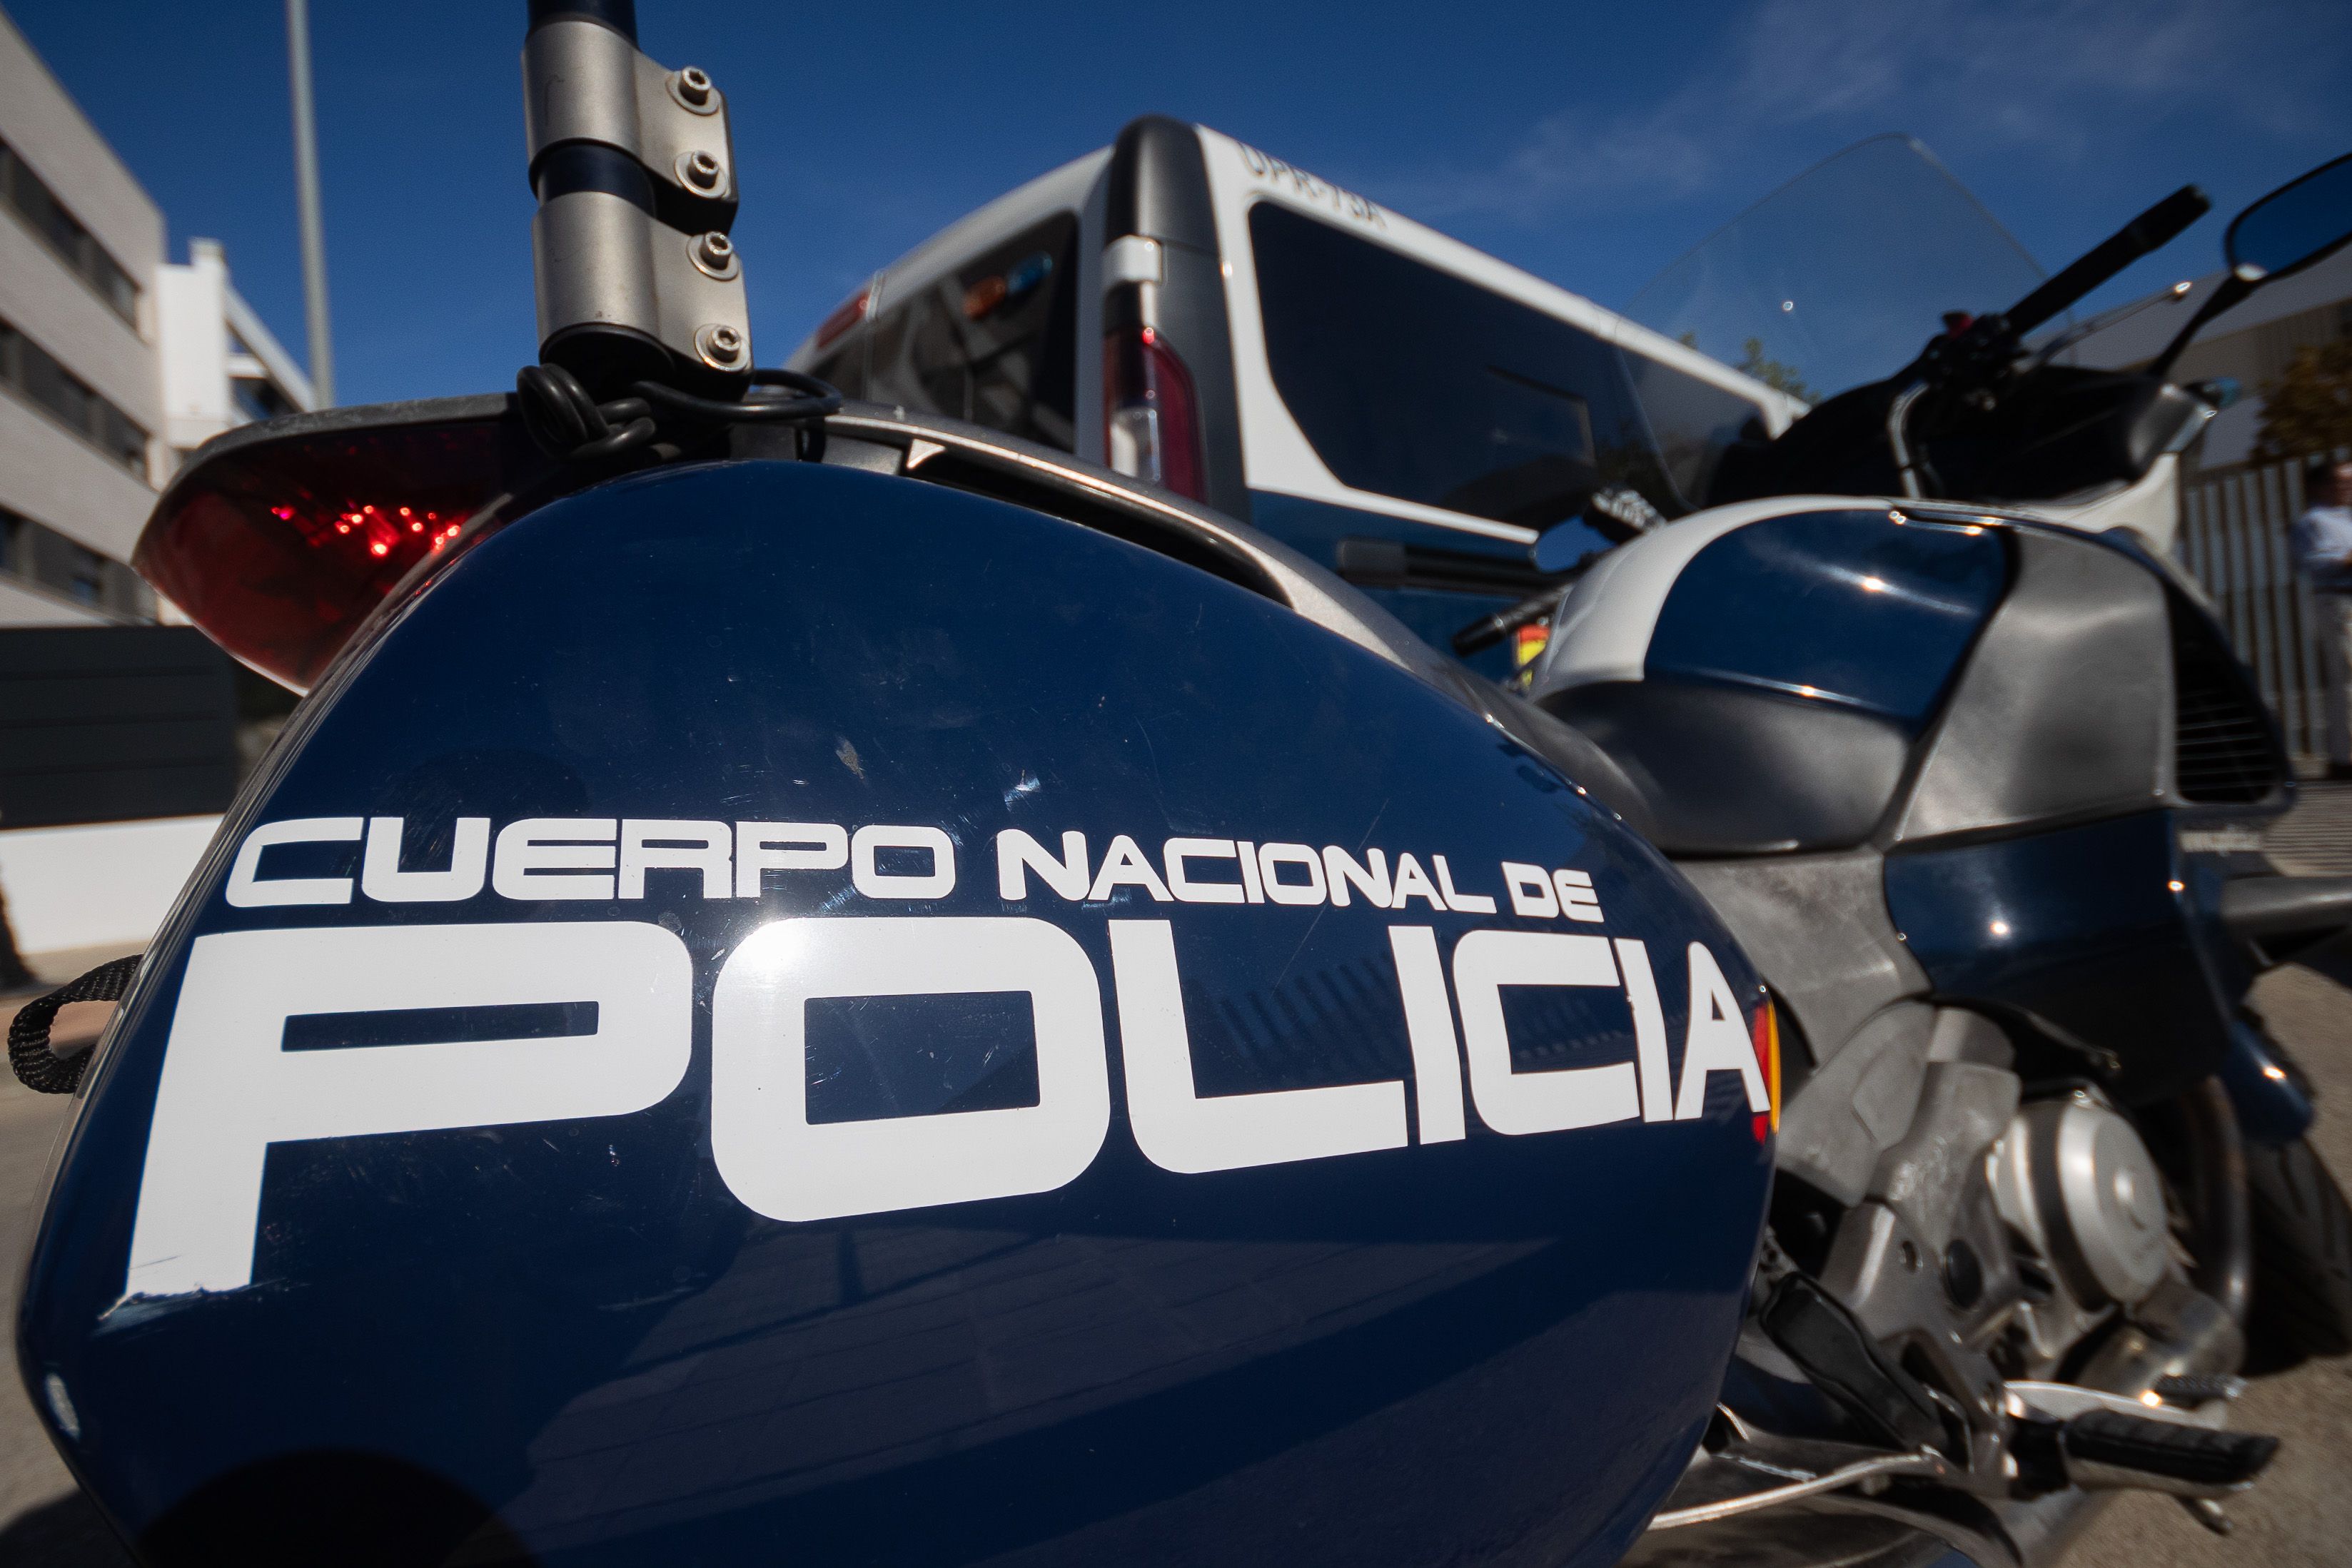 Vehículos de la Policía Nacional de Jerez en una imagen de archivo.